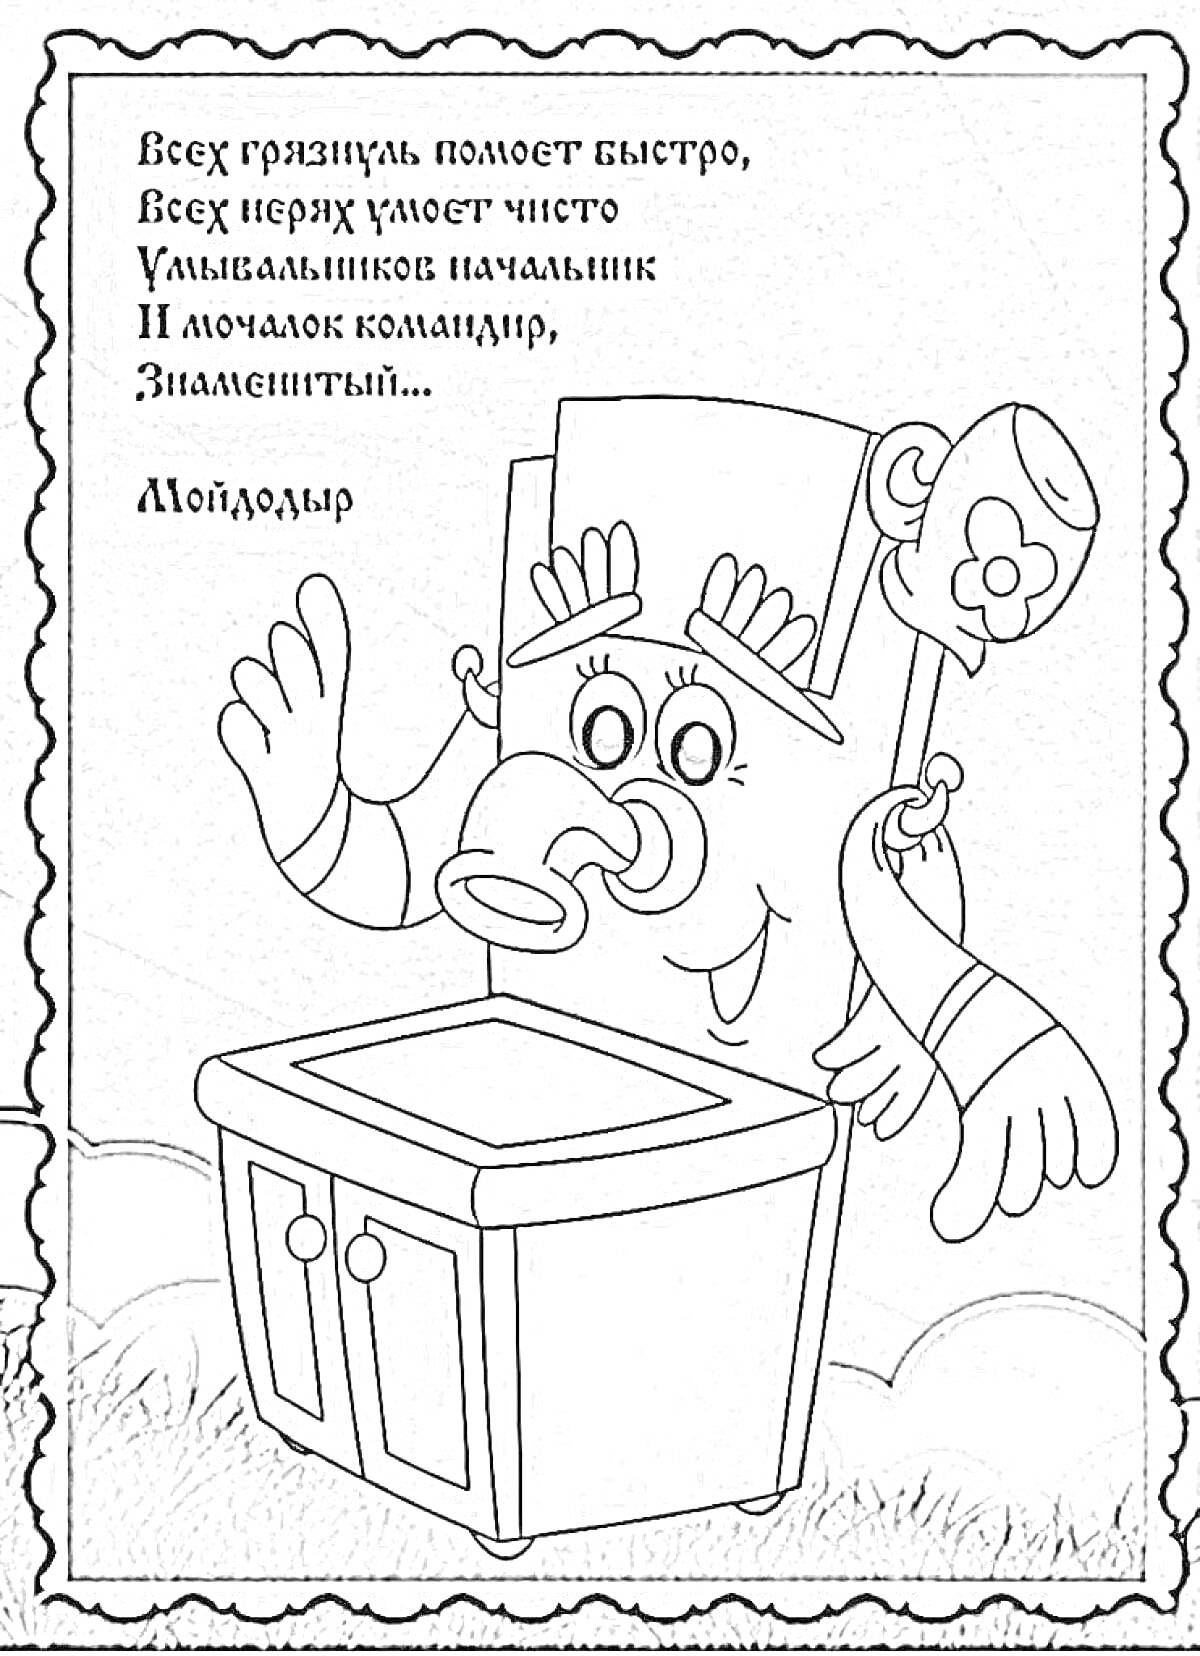 Раскраска Моёдодыр с улыбкой и текстом Умывальников начальник, с поднятой рукой и мылом на боку